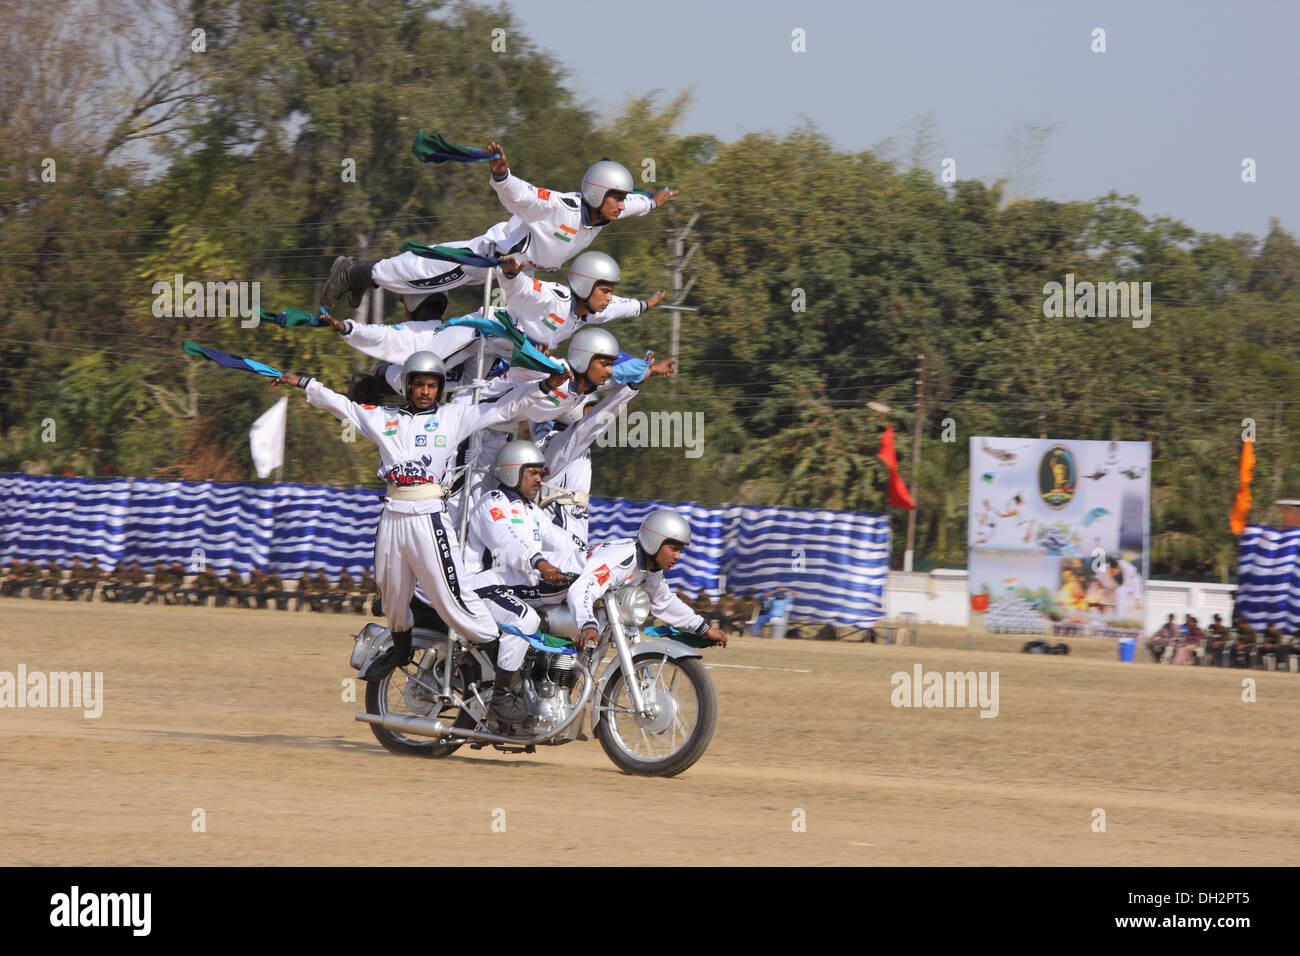 Équilibre synchronisée sur le cycle du moteur à Madhya Pradesh Inde Asie Jabalpur Banque D'Images